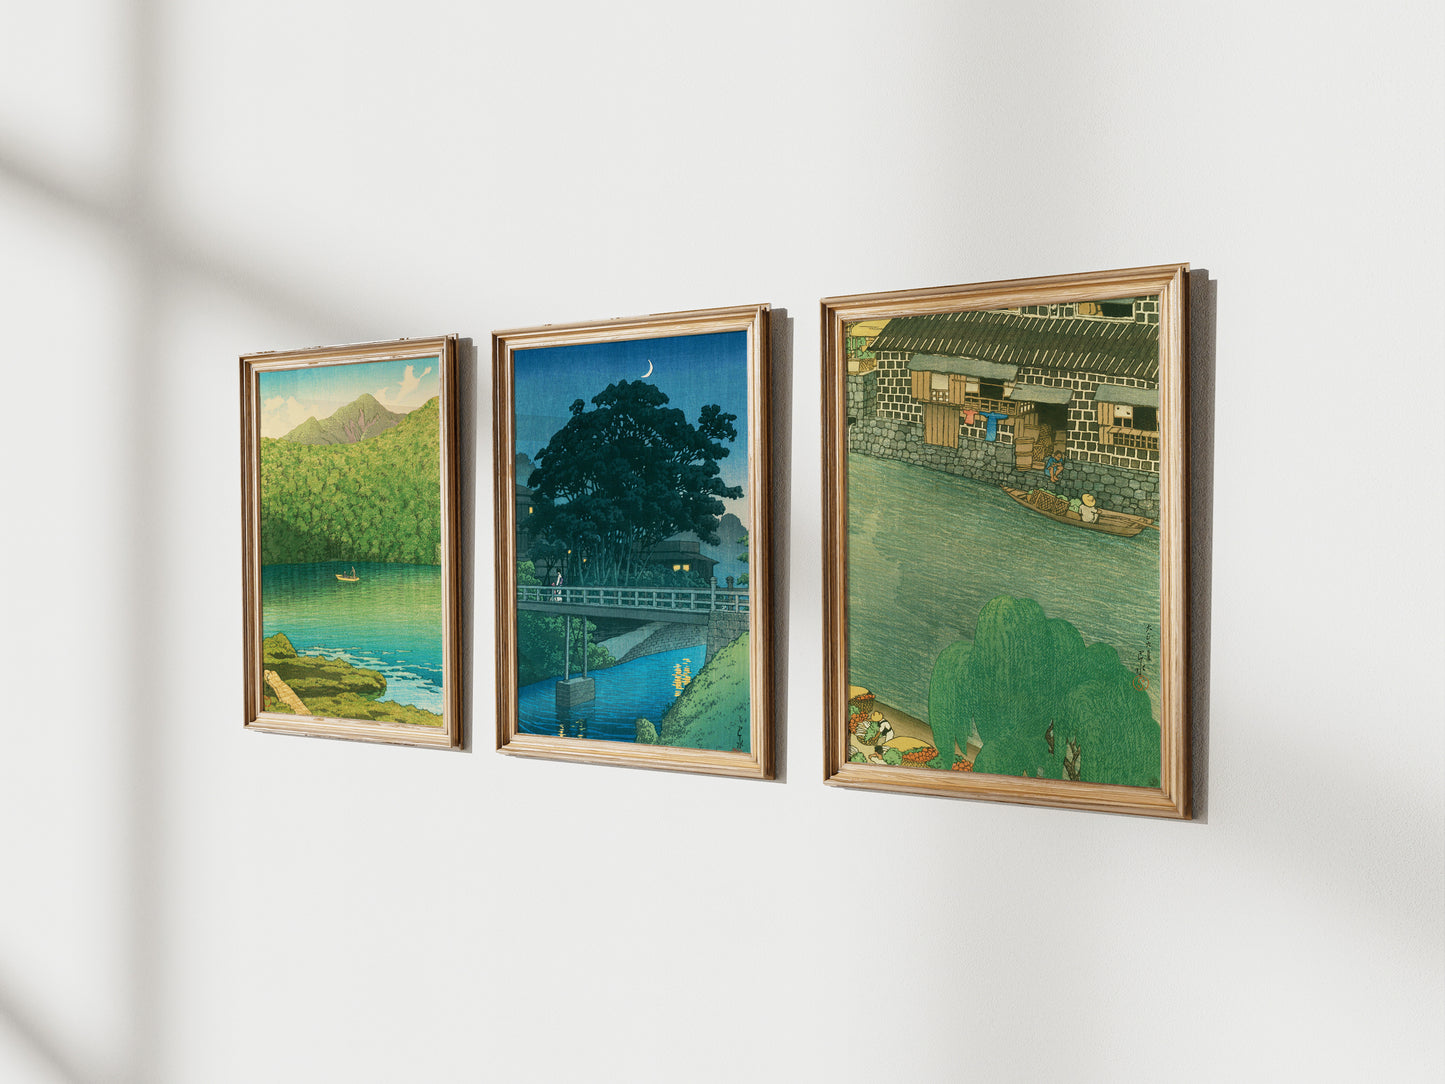 A set of 3 - Kawase Hasui ,Japanese Art, 12×18inches (11×17＋margin), Made in Japan,Woodblock Print, Ukiyo-e, Shipping free